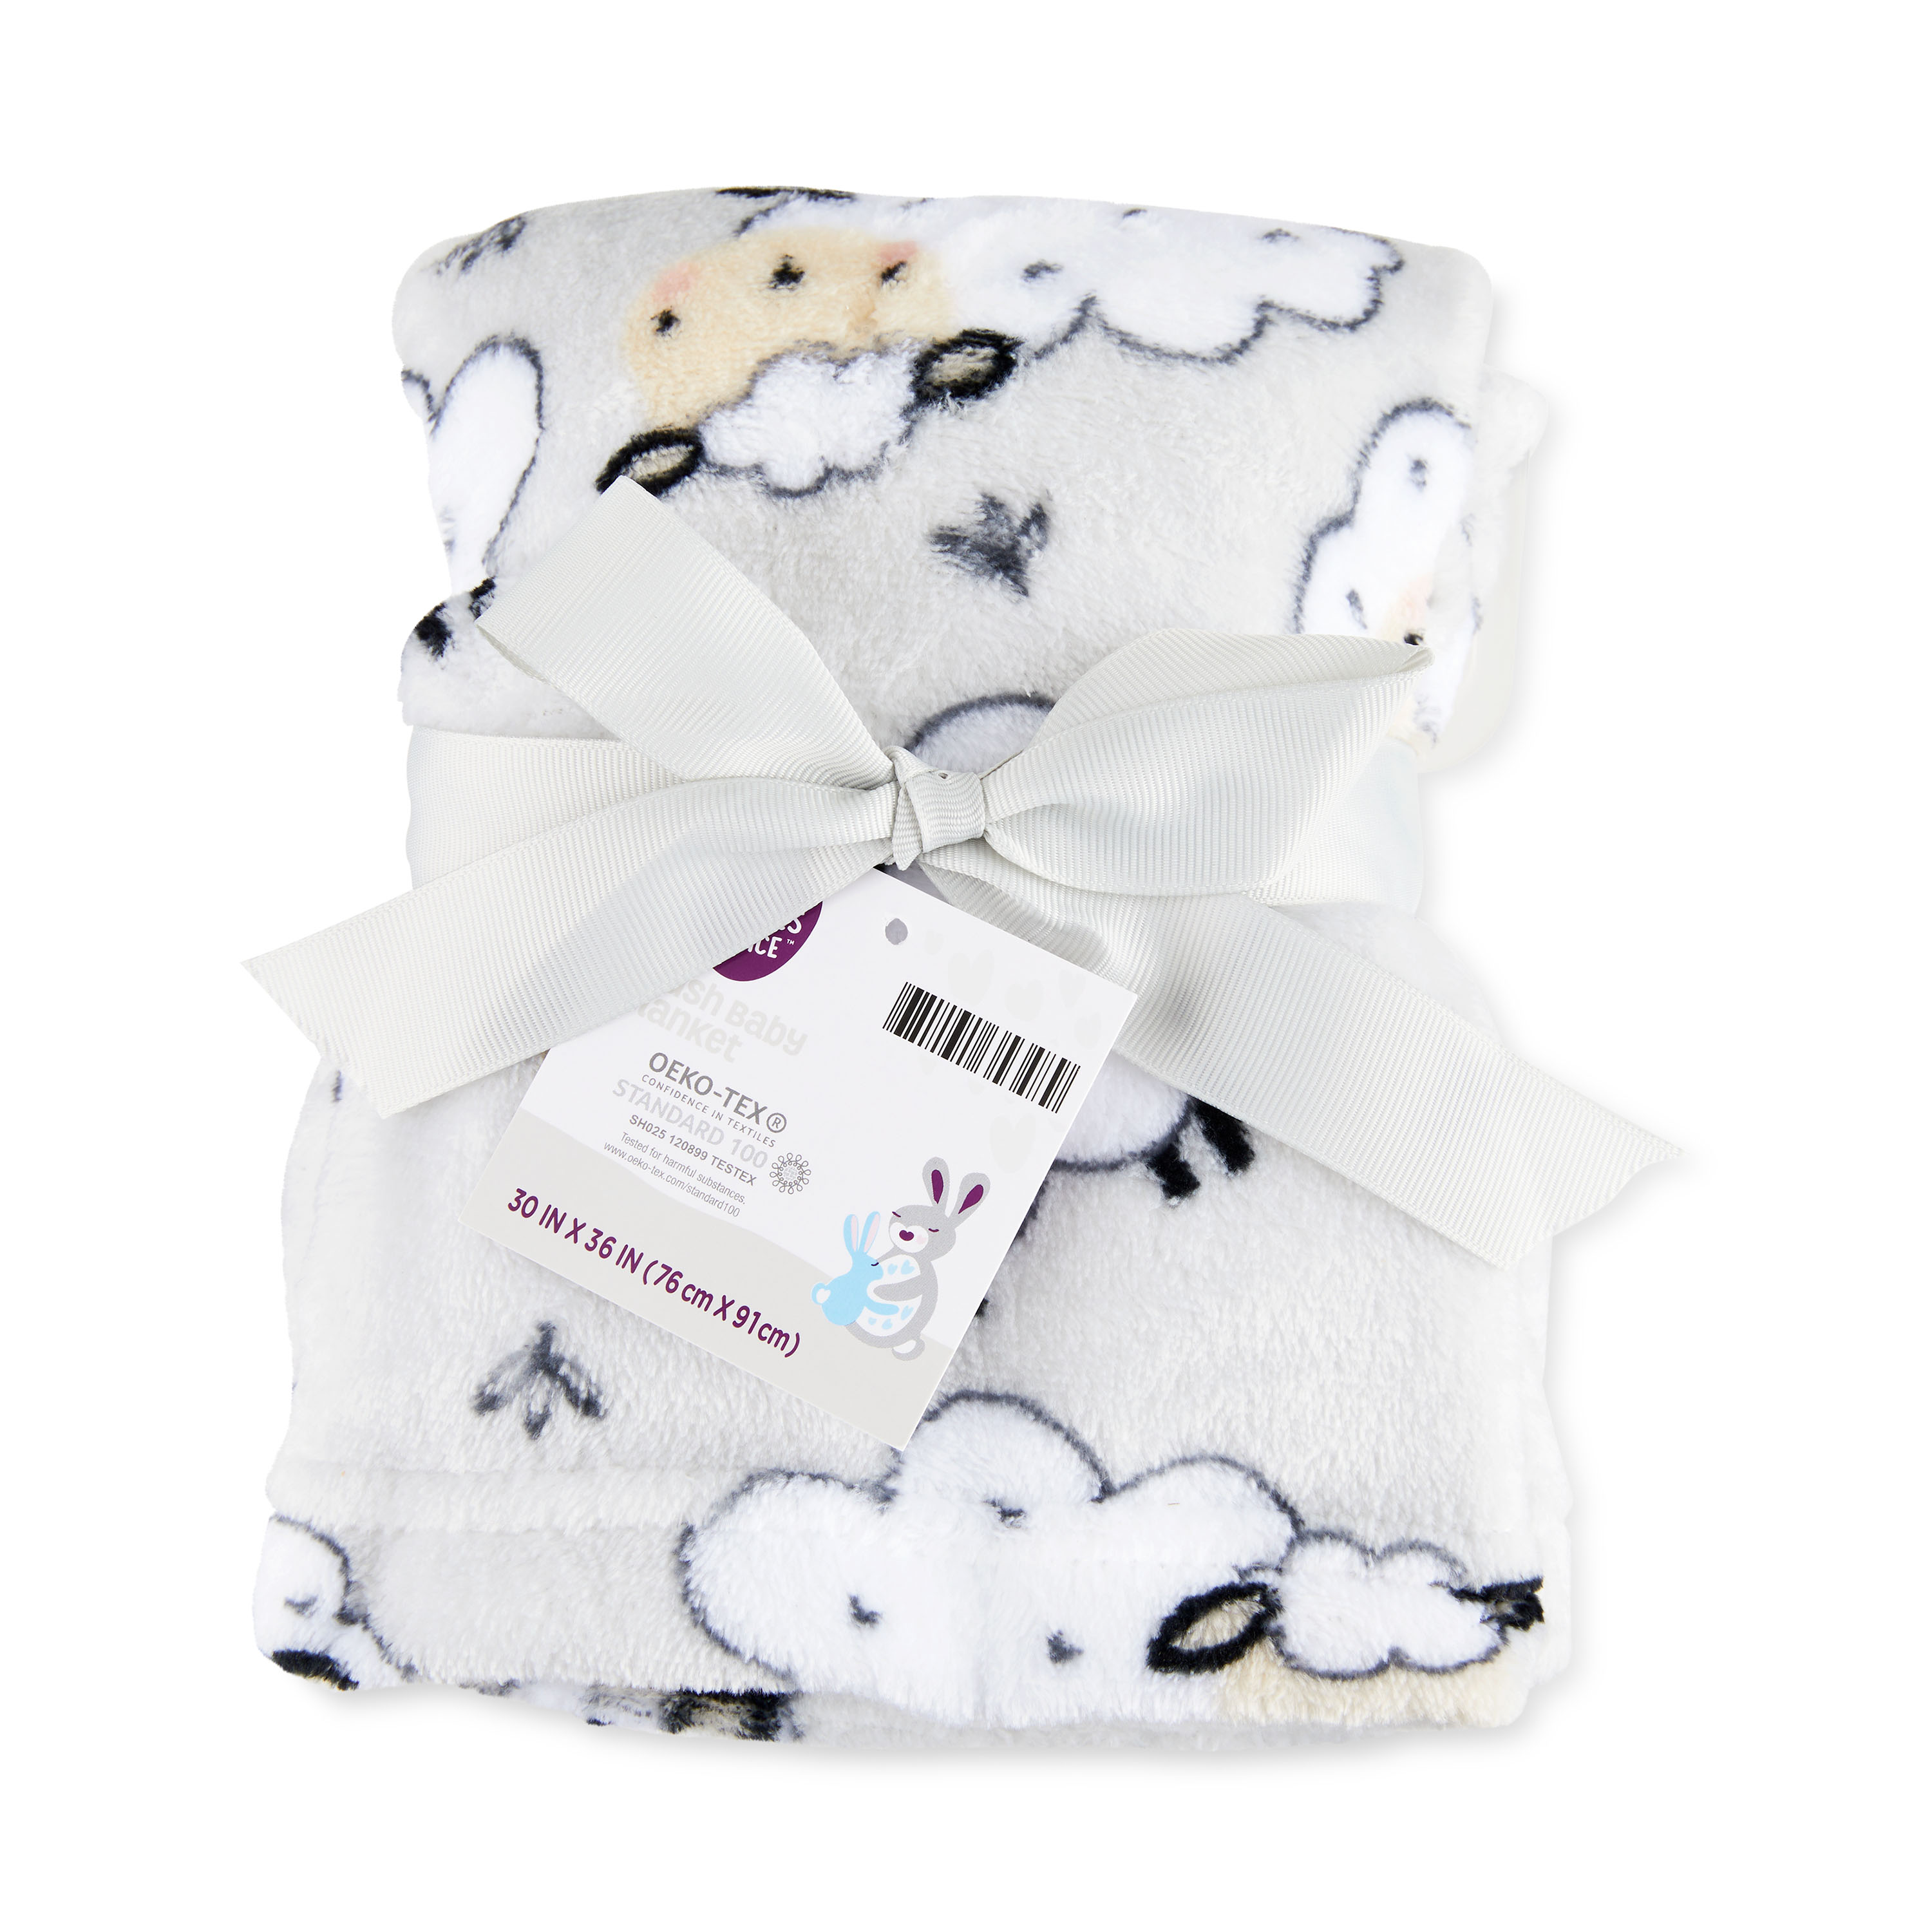 Parent's Choice Grey Sheep Plush Baby Blanket,Infant Unisex, 30" x 36" - image 3 of 8